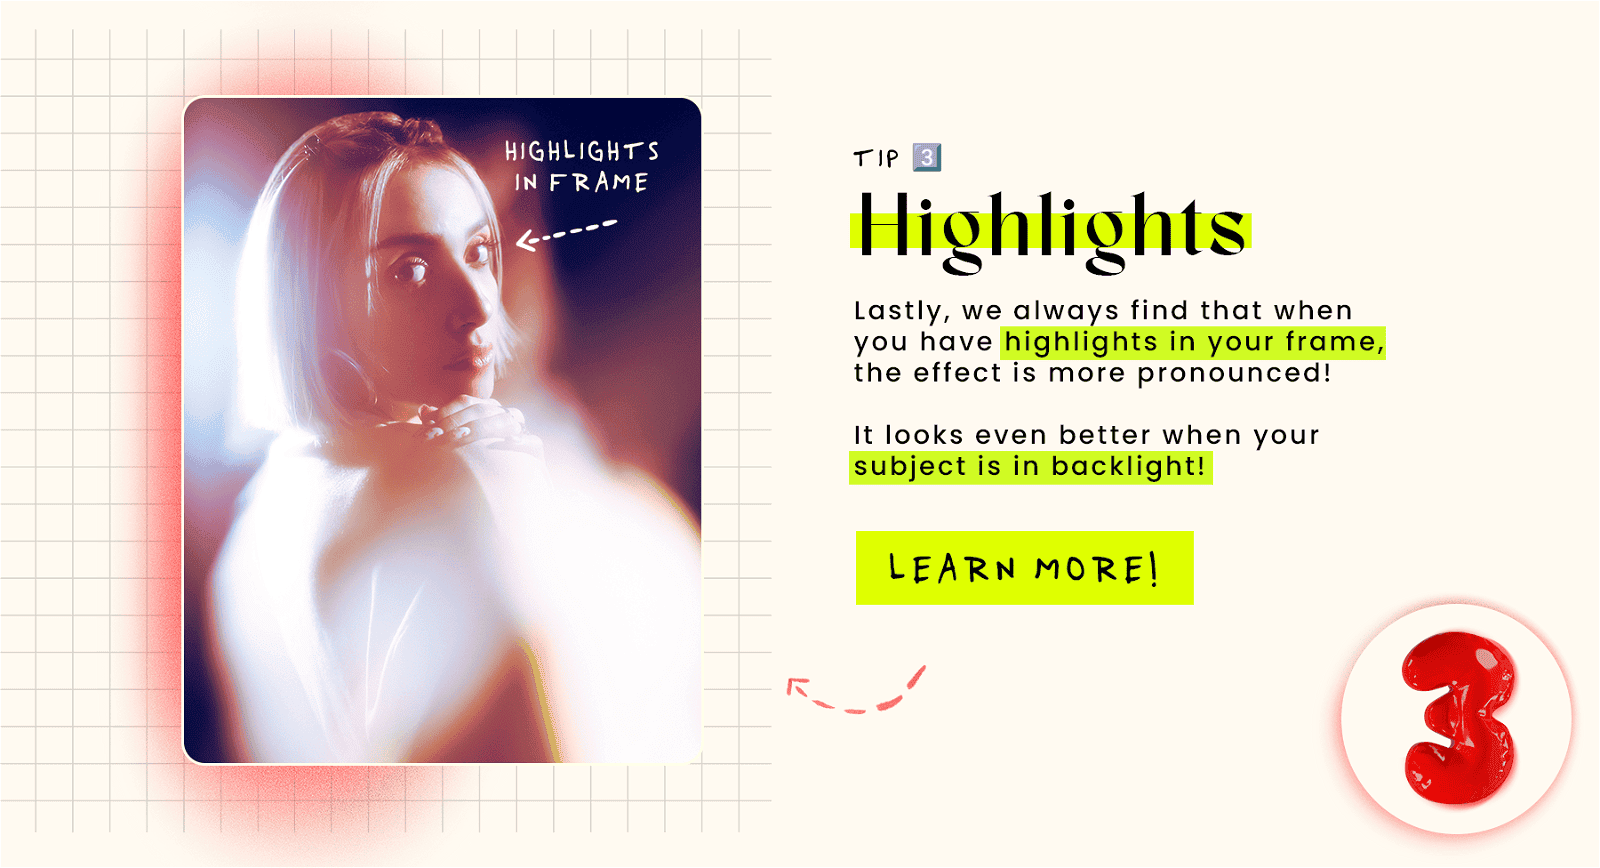 Tip #3 - Highlights in frame